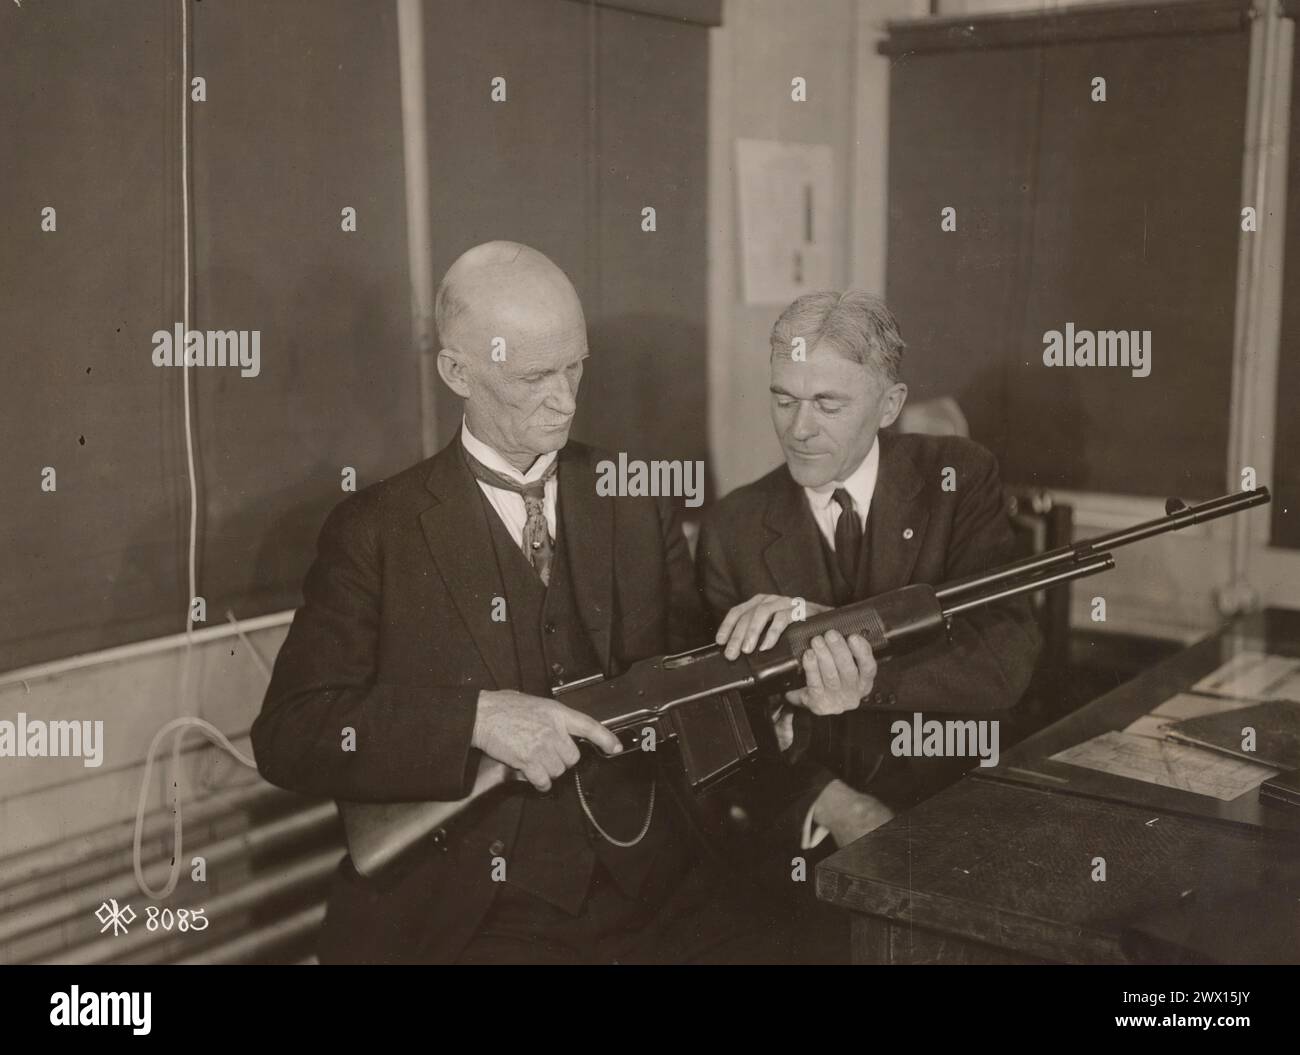 M. John M. Browning, inventeur de la mitrailleuse légère Browning, et M. Burton, un expert de Winchester sur les fusils, discutant des points les plus fins de l'arme CA. 1918 Banque D'Images